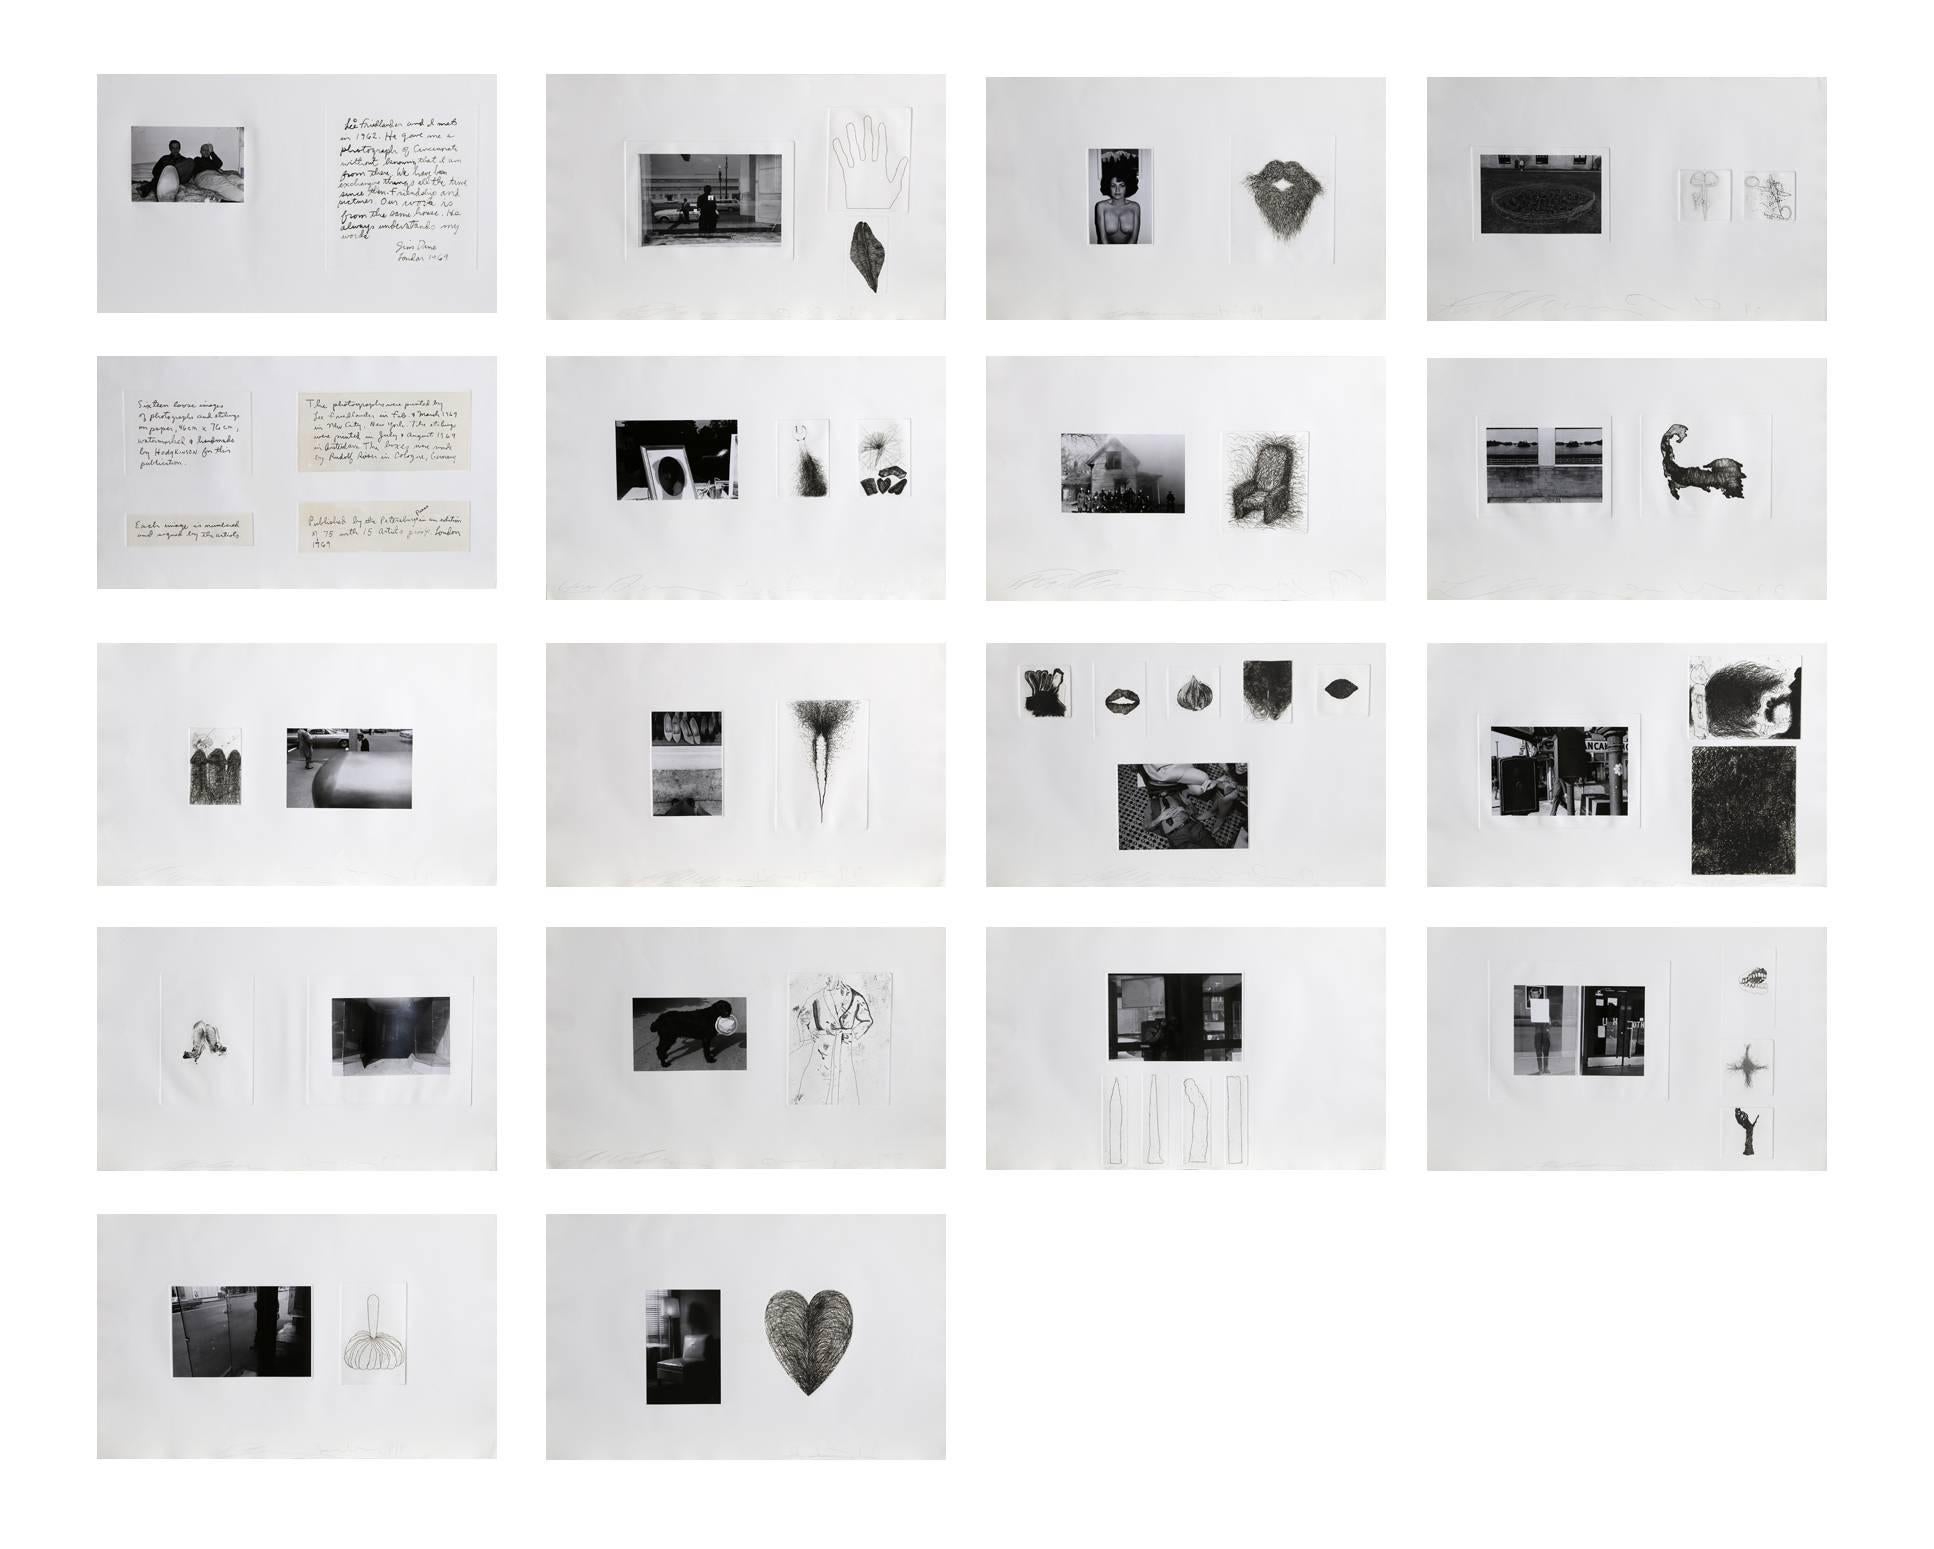 Artiste : Jim Dine, américain (1935 - ) et Lee Friedlander, américain (1934 - )
Titre : Photographies et gravures
Année : 1969
Médium : Portefeuille de 16 diptyques de tirages et de gravures à la gélatine argentique, chacun signé au crayon par les